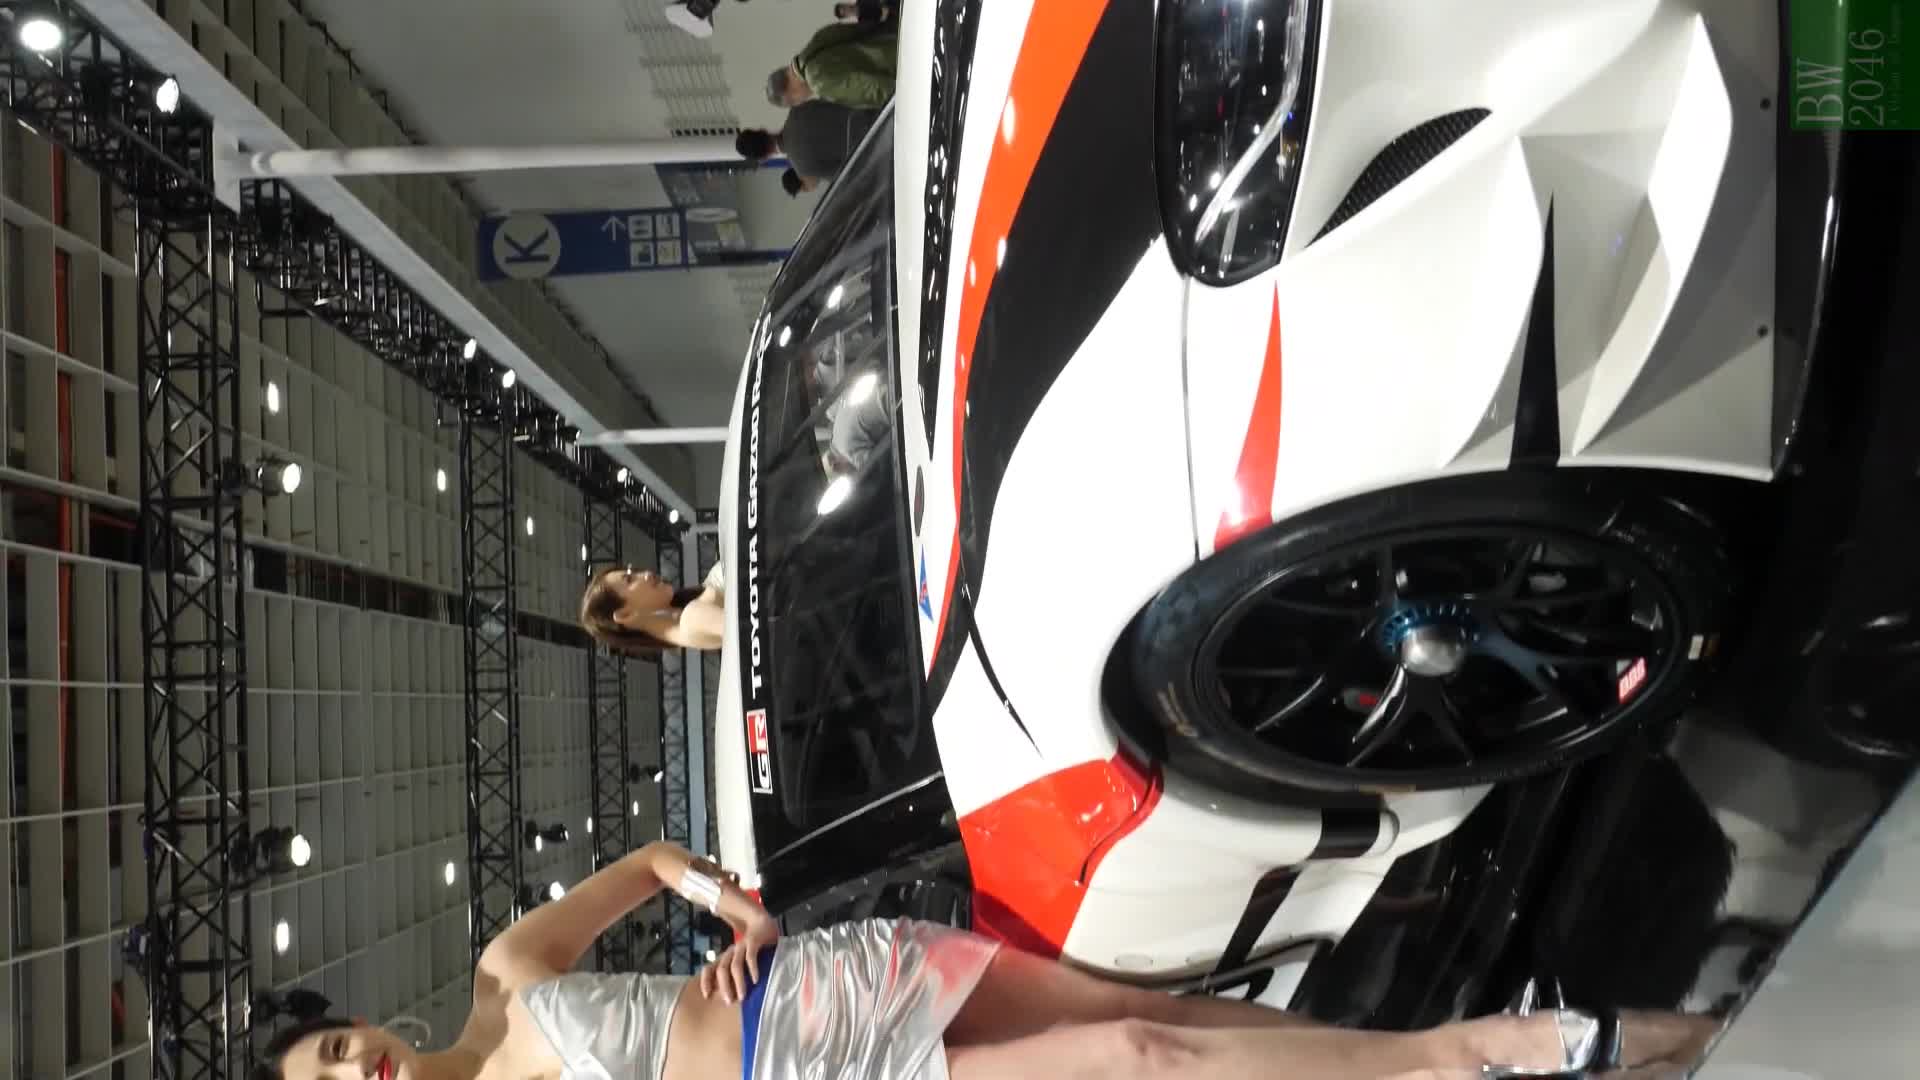 世界新車大展 – 台北車展  Taipei Auto Show 2020 – 車模 28 김연진 金淵珍 Jina @ TOYOTA Gazoo Racing (Mobile Version)